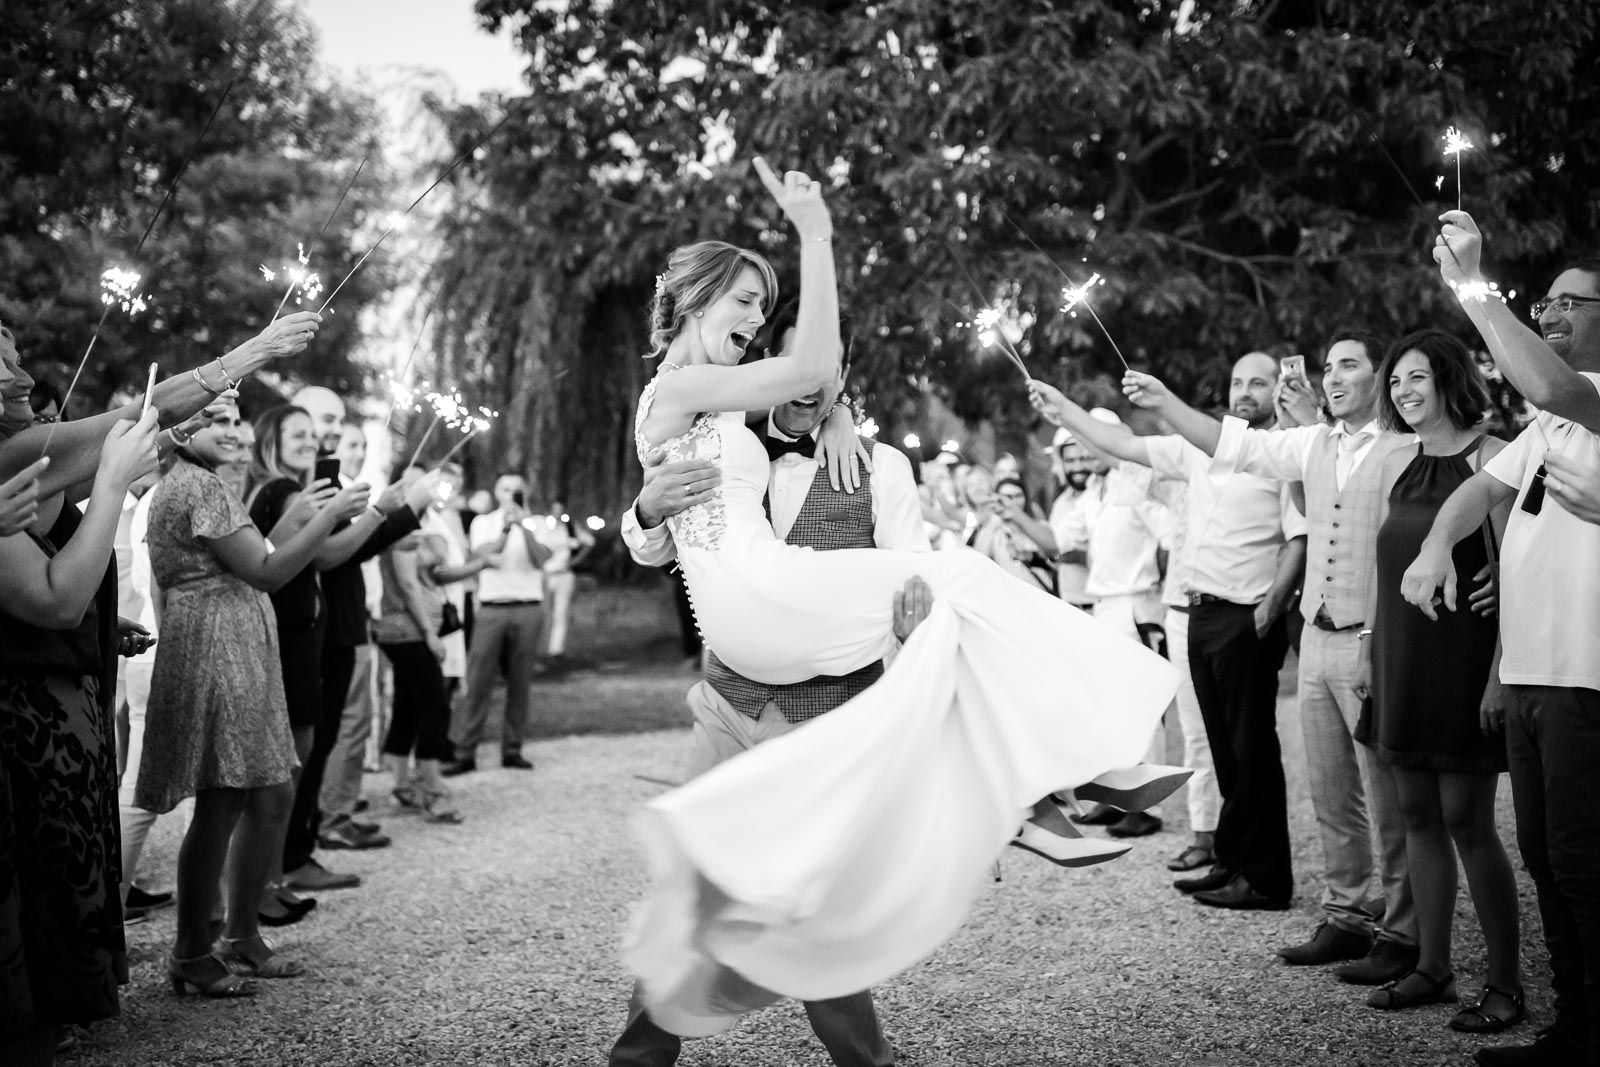 Photo de Mathieu Dété, photographe de mariage, lors d'un mariage sur l'île de la Réunion 974, à Saint-Paul, représentant une mariée heureuse avec ses invités, en noir et blanc